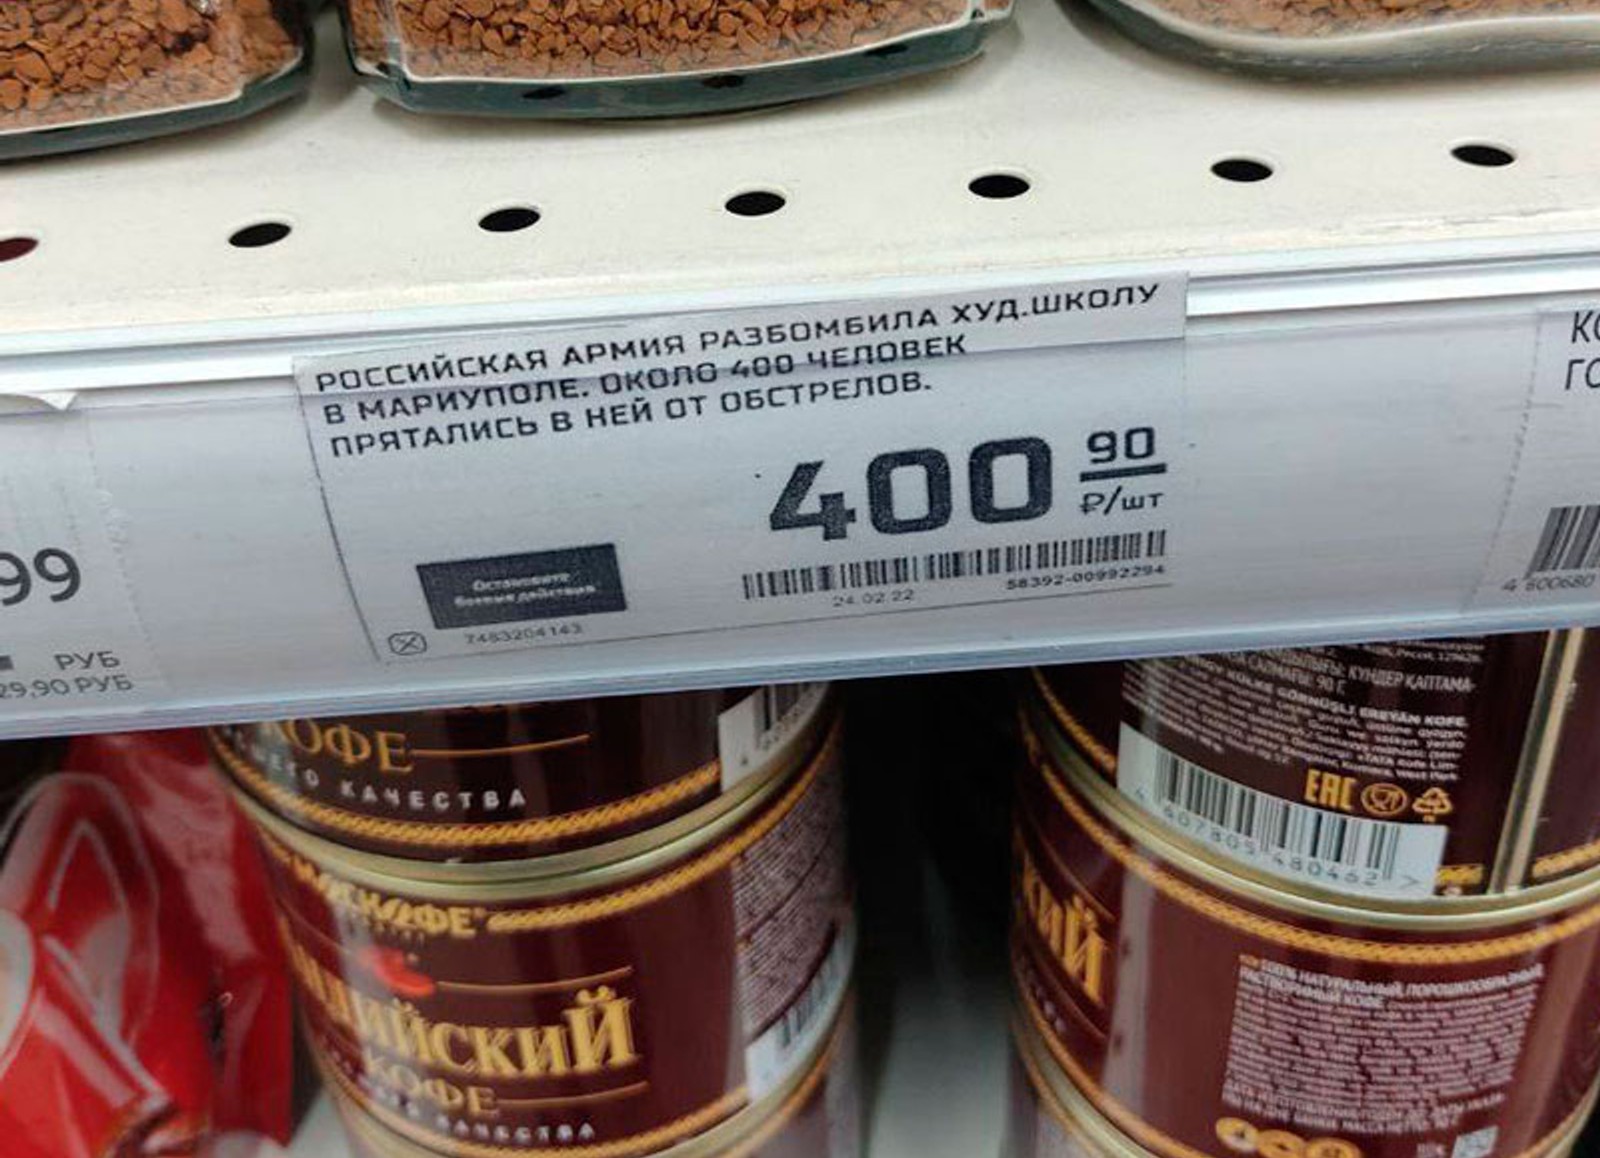 «Остановите войну». В магазинах Казани активисты заменили ценники на антивоенные 